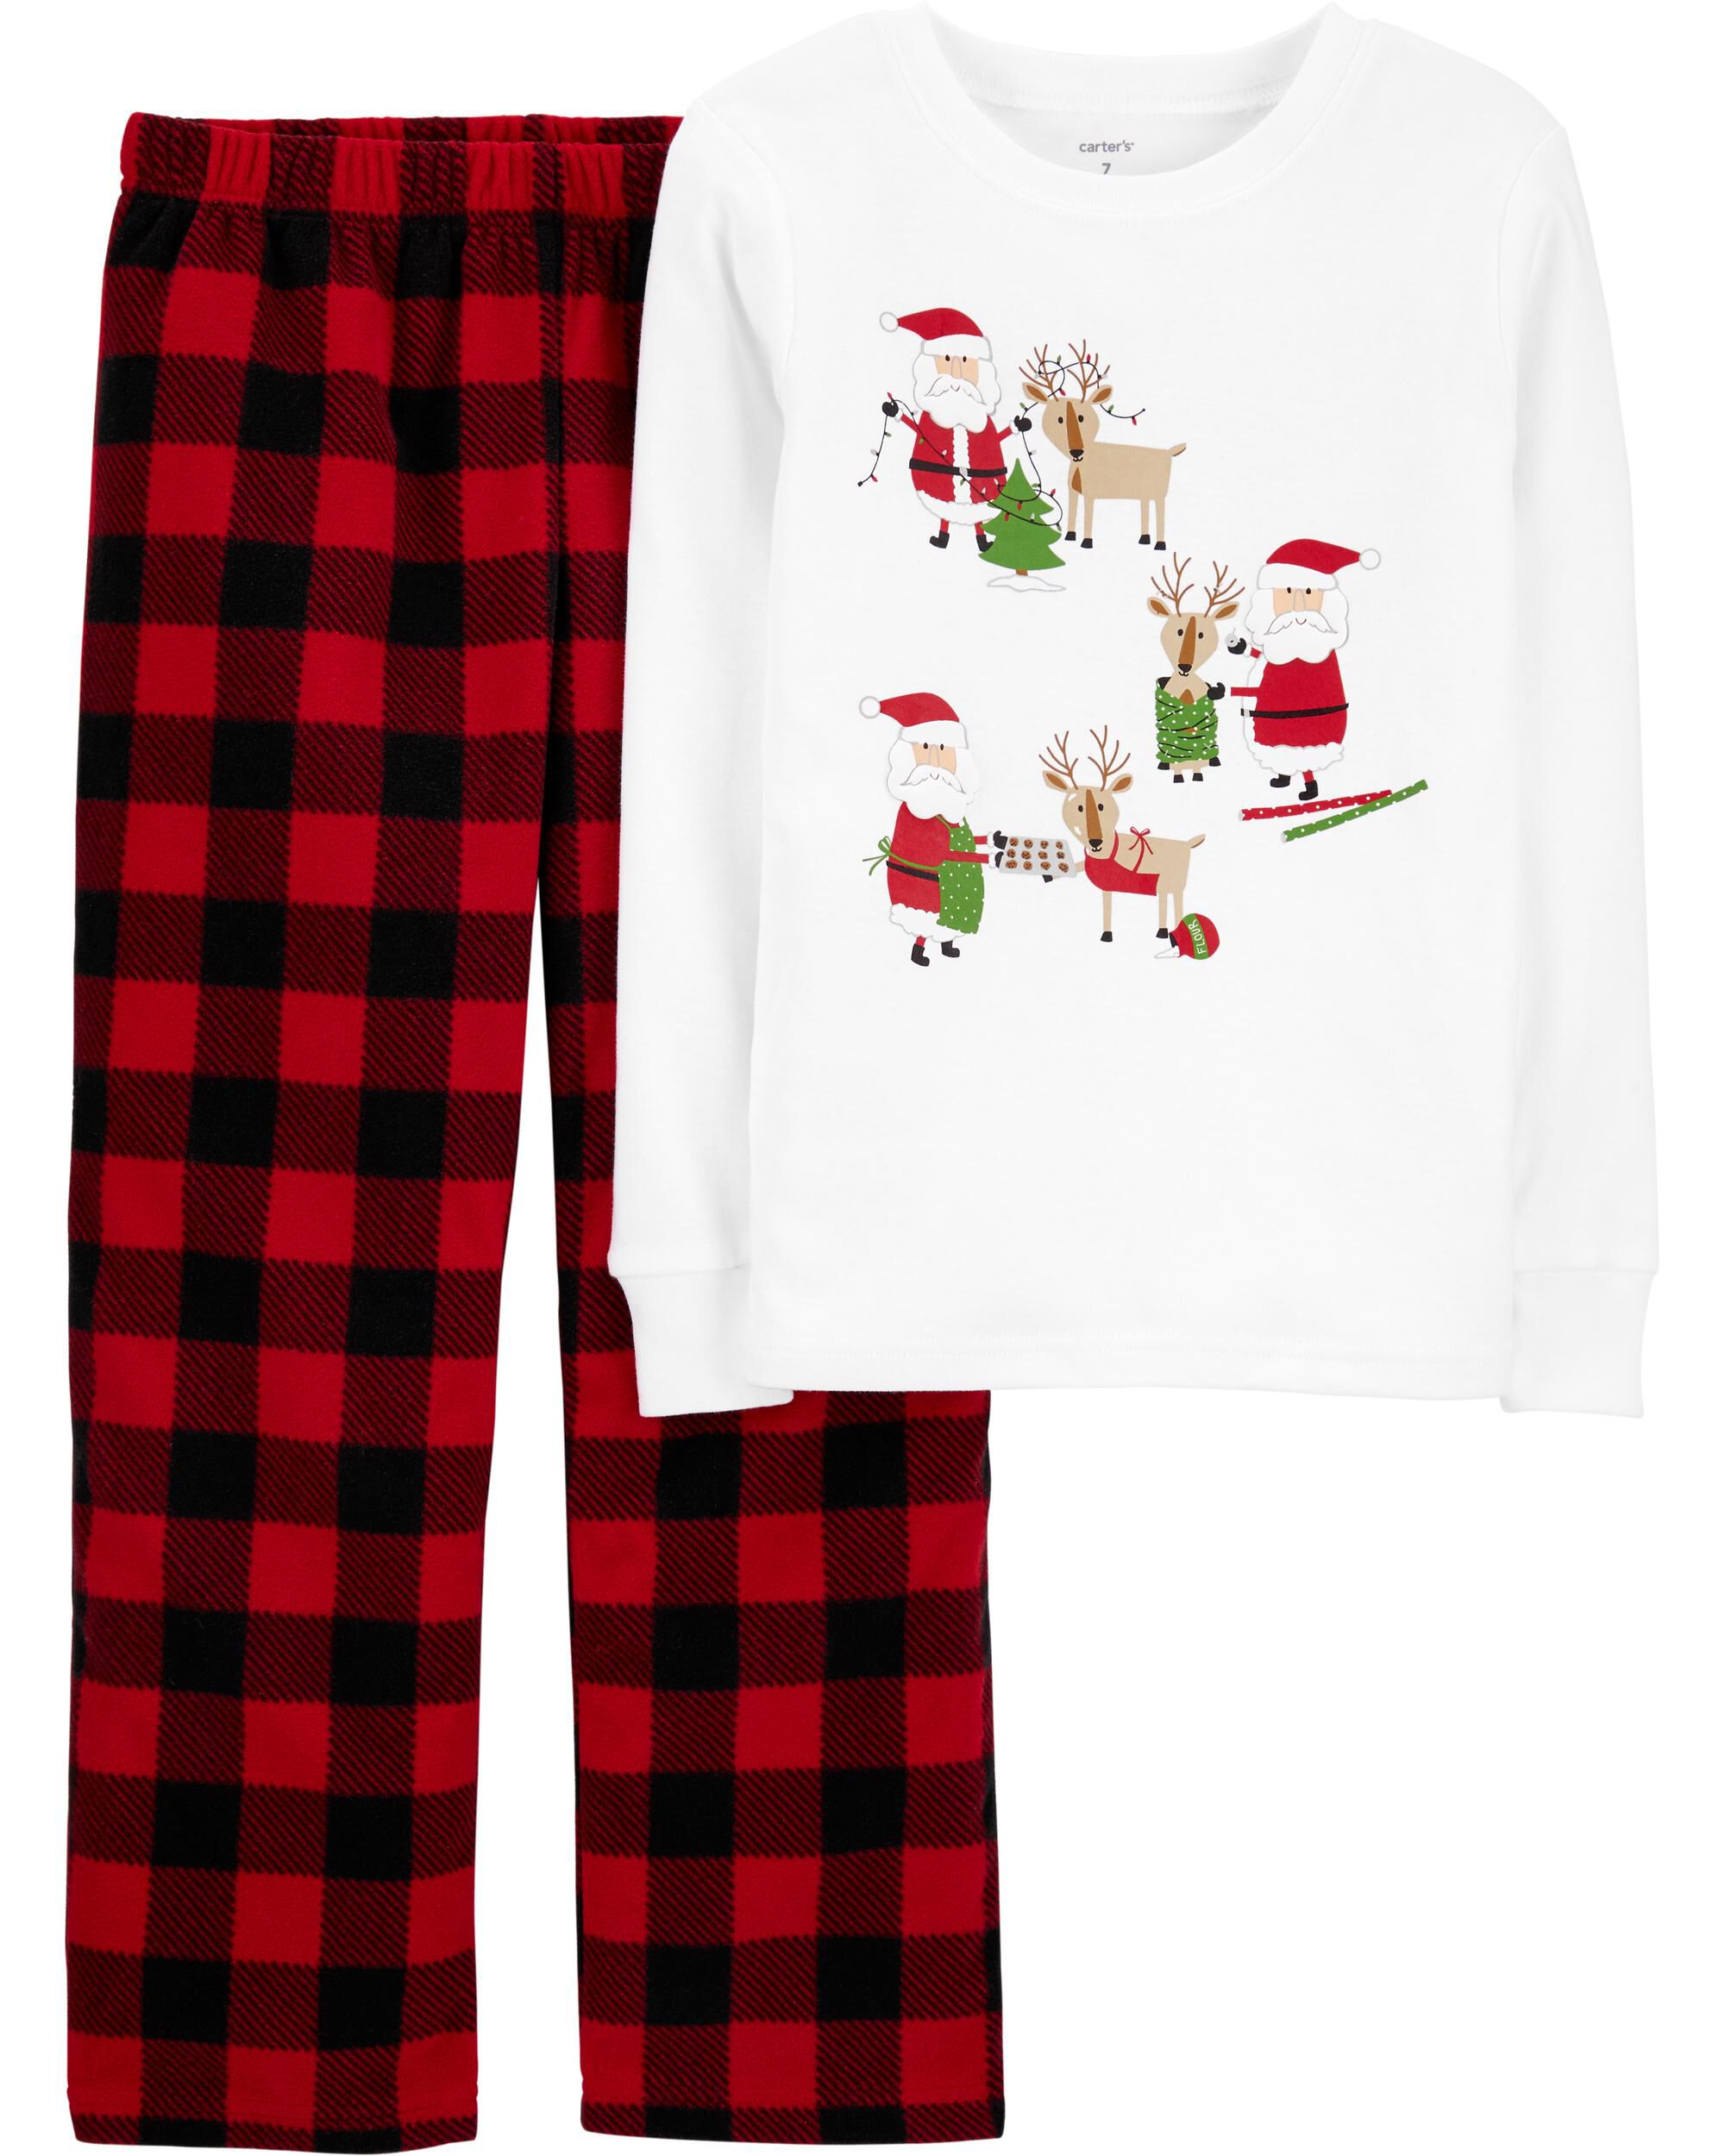  *CLEARANCE* 2-Piece Santa Christmas Fleece PJs 